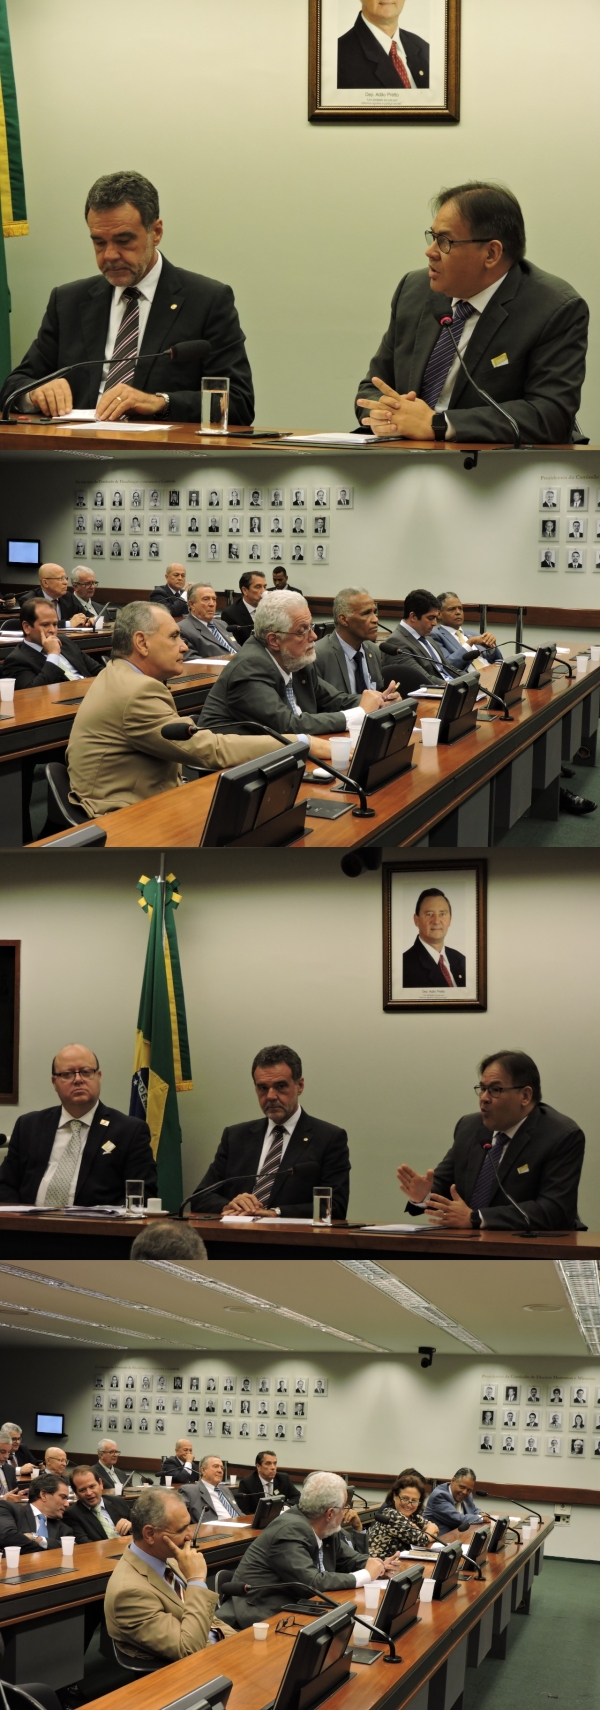 Projeto-da-CNSaude-apresenta-demandas-do-setor-de-saude-a-parlamentares-da-Bahia3 CNSaúde inaugura seu projeto "Saúde no Congresso" com representantes da Bahia